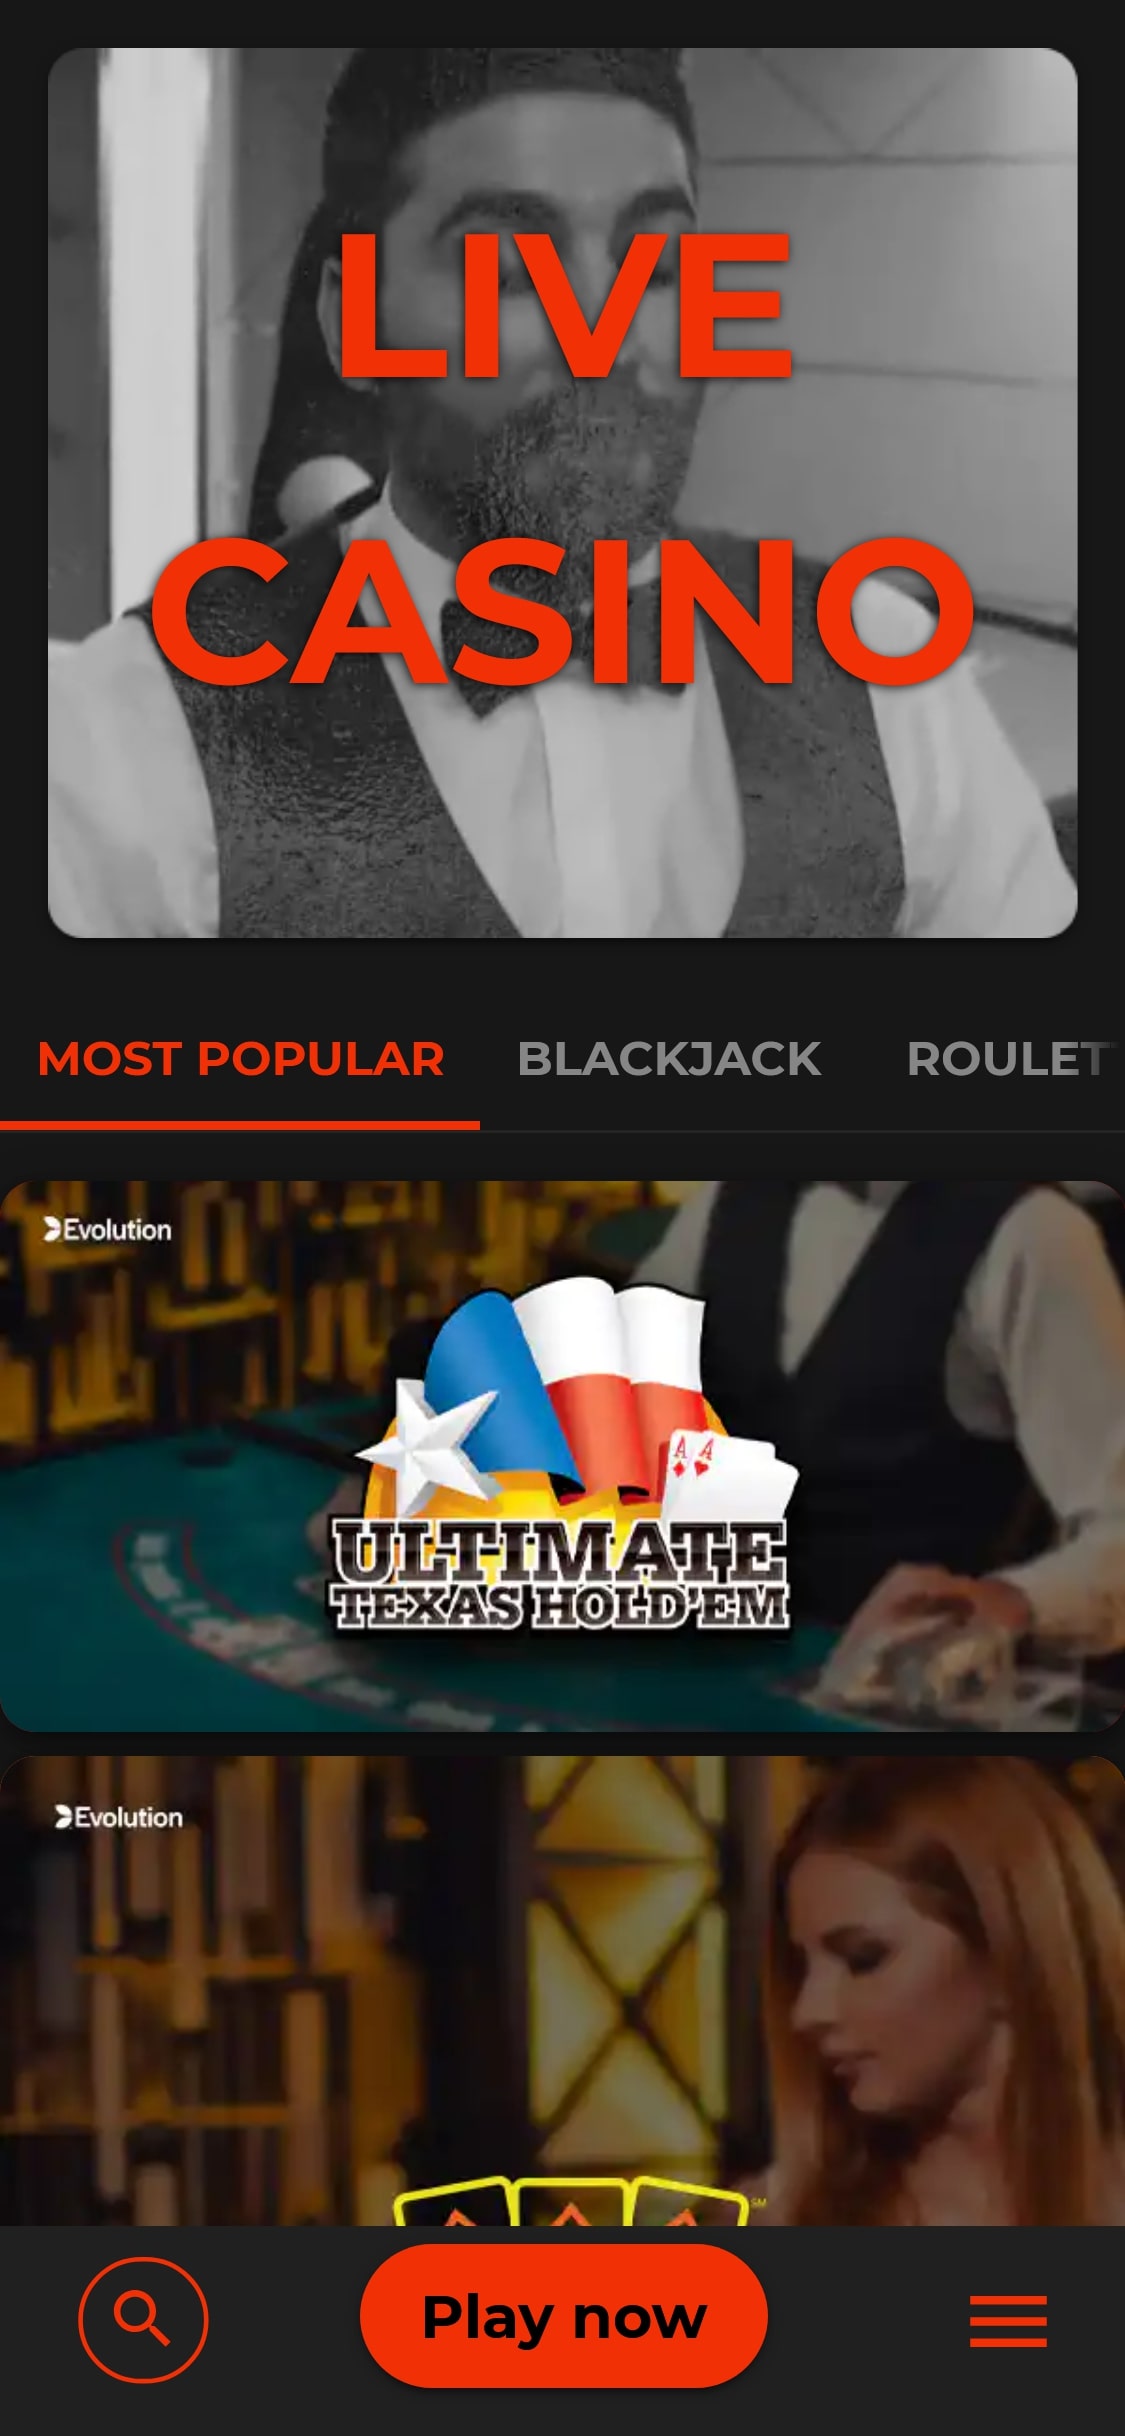 Klirr Casino Mobile Live Dealer Games Review